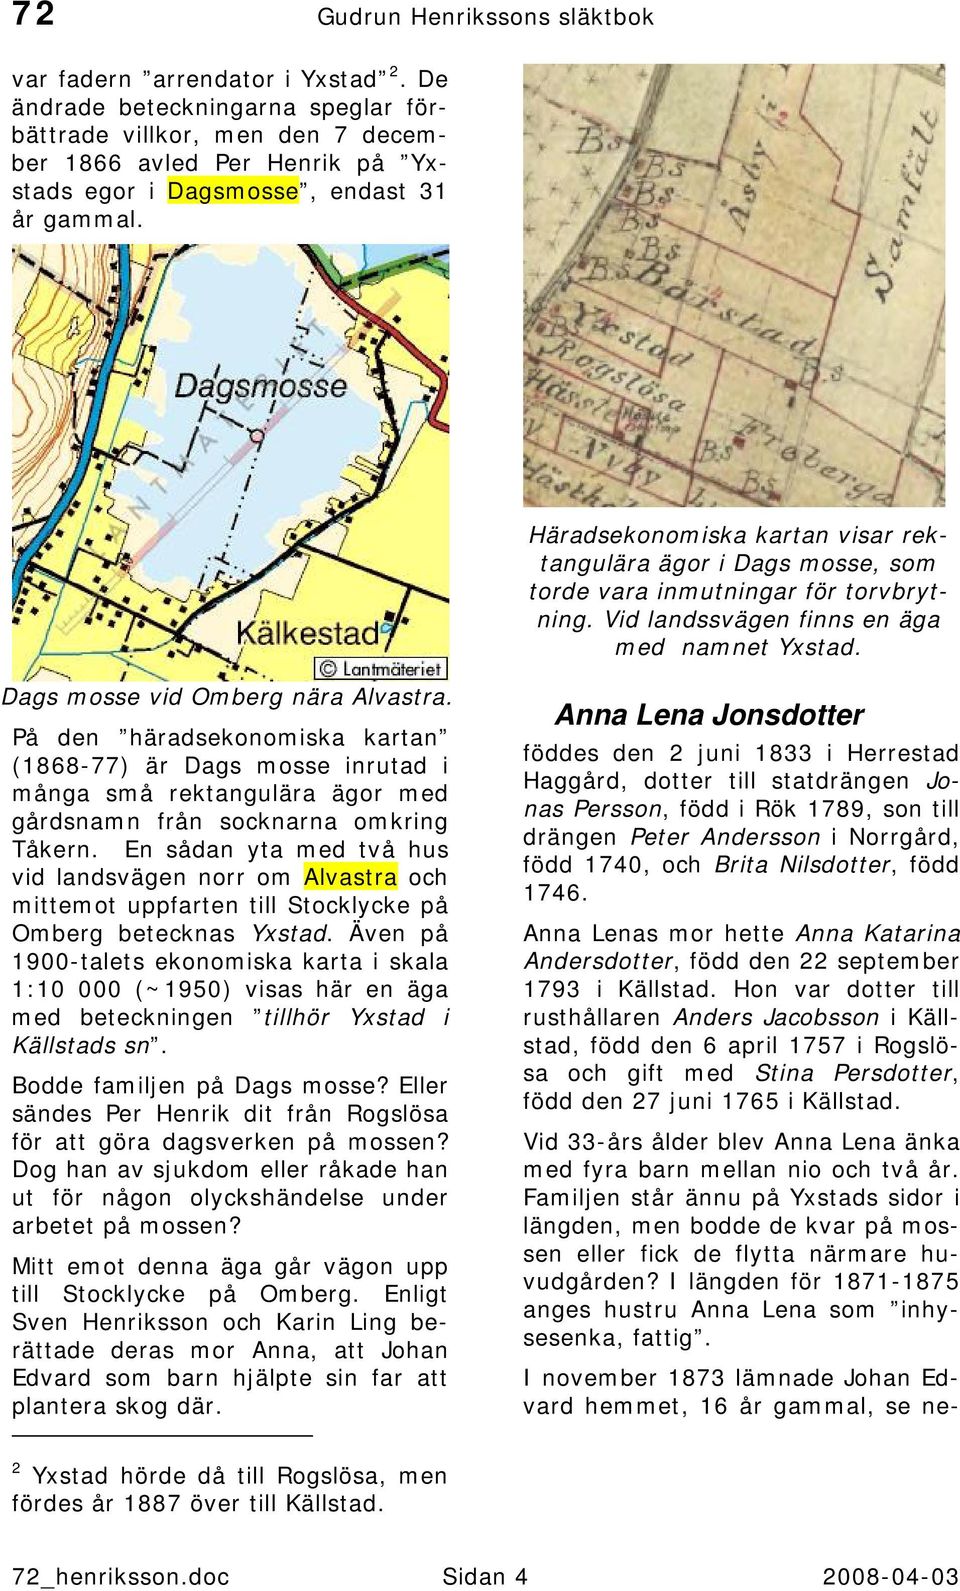 Häradsekonomiska kartan visar rektangulära ägor i Dags mosse, som torde vara inmutningar för torvbrytning. Vid landssvägen finns en äga med namnet Yxstad. Dags mosse vid Omberg nära Alvastra.